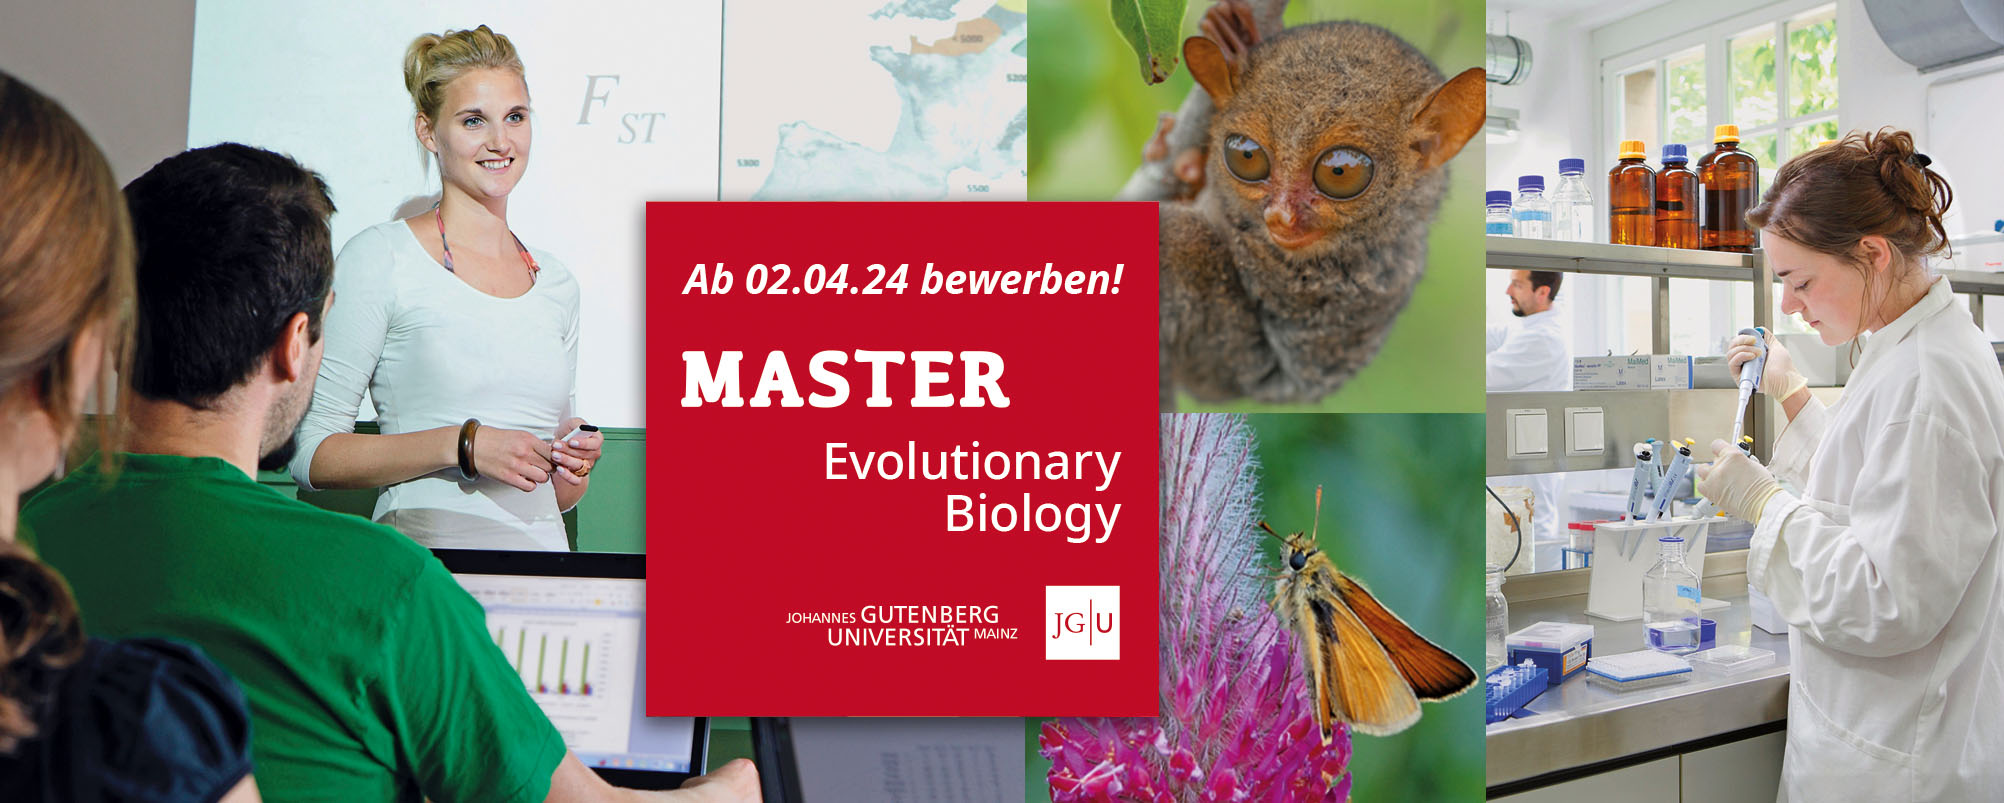 Neuer internationaler Masterstudiengang am Fachbereich Biologie ab Wintersemester 2024/25. Fotos: T. Hartmann (2), Adobe Stock, S. Xu